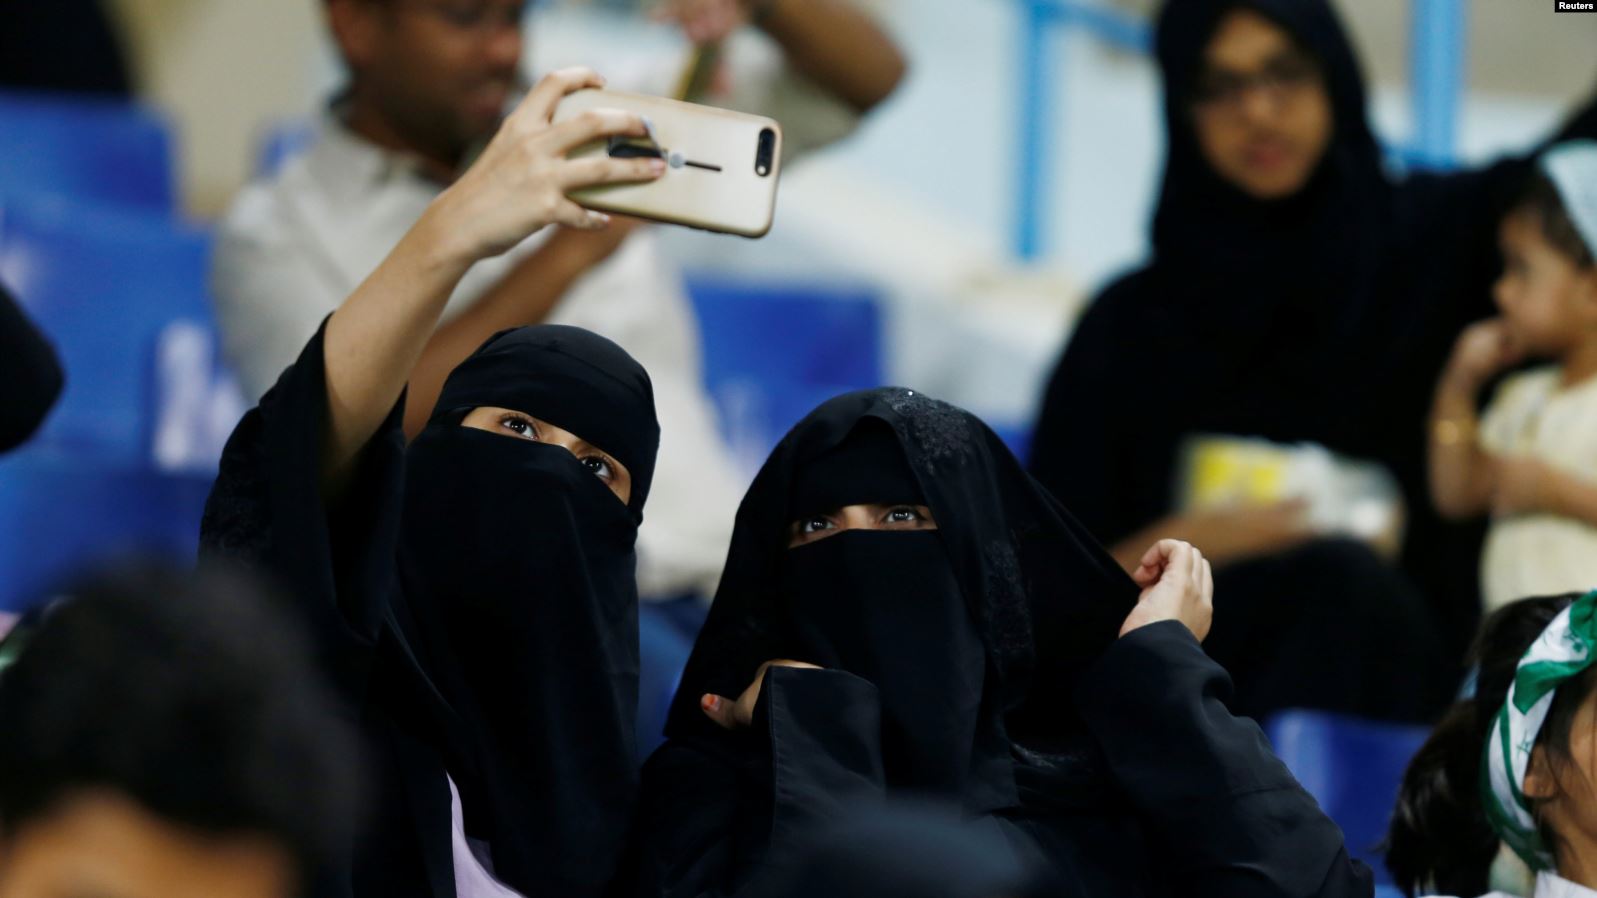 Arabia Saudite lejon gratë të udhëtojnë në mënyrë të pavarur